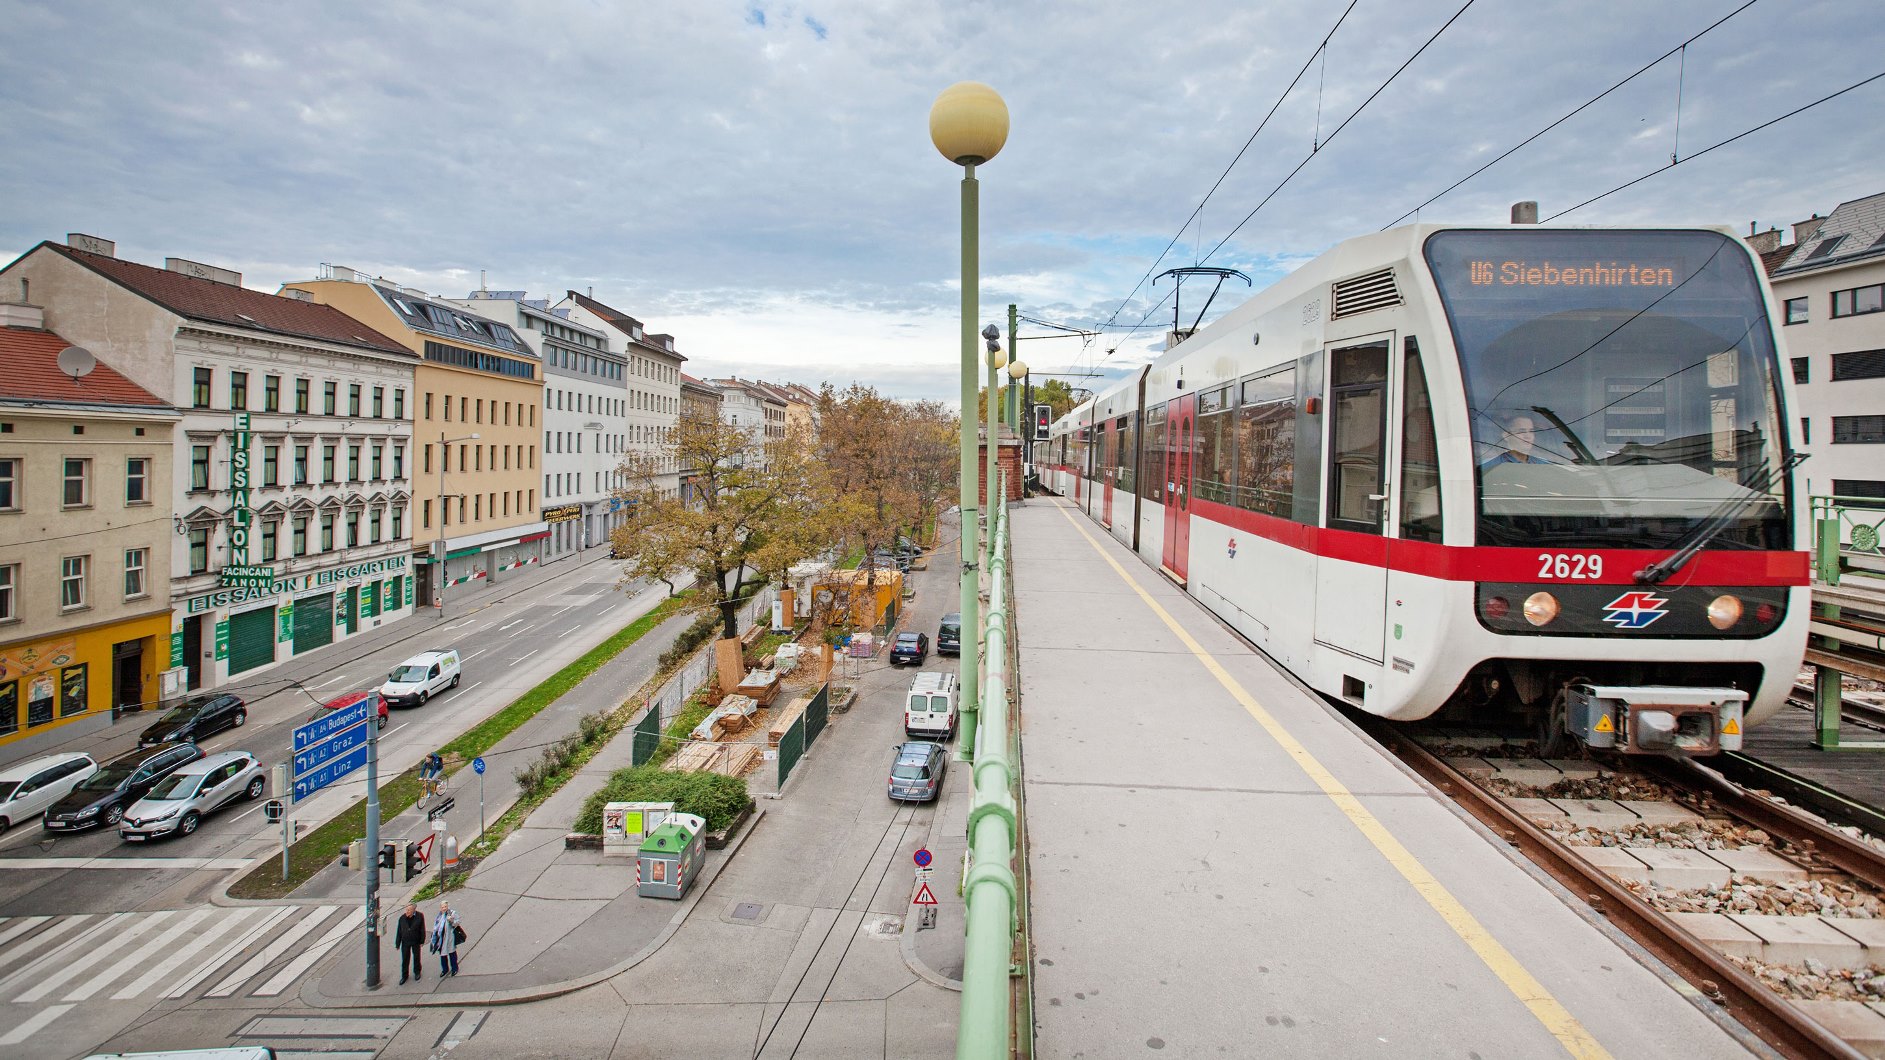 Low floor mass transit cars run from Floridsdorf to Siebenhirten